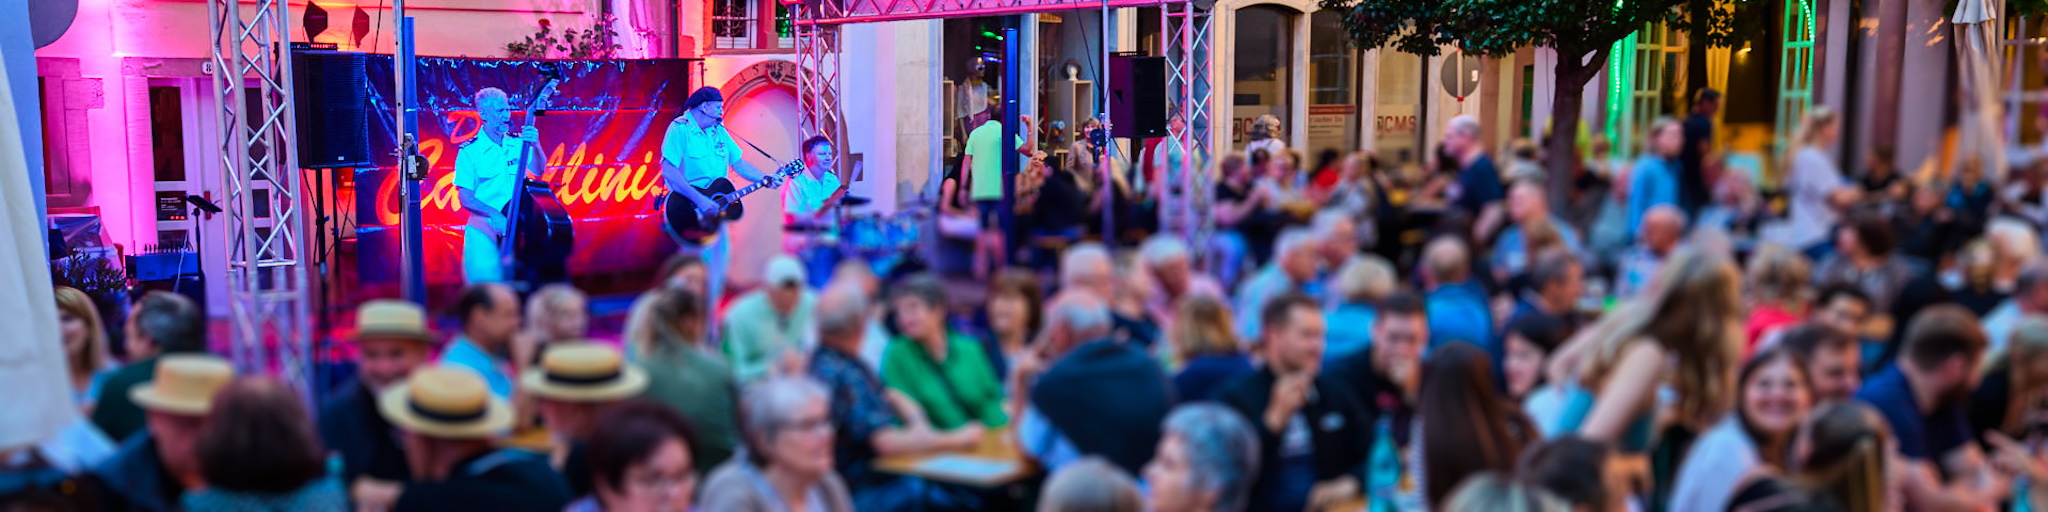 Viele Menschen sitzen bei stimmungsvoller Beleuchtung auf einem Wertheimer Platz und hören einer Bnad zu. Das Foto stammt vom Altstadtfest.